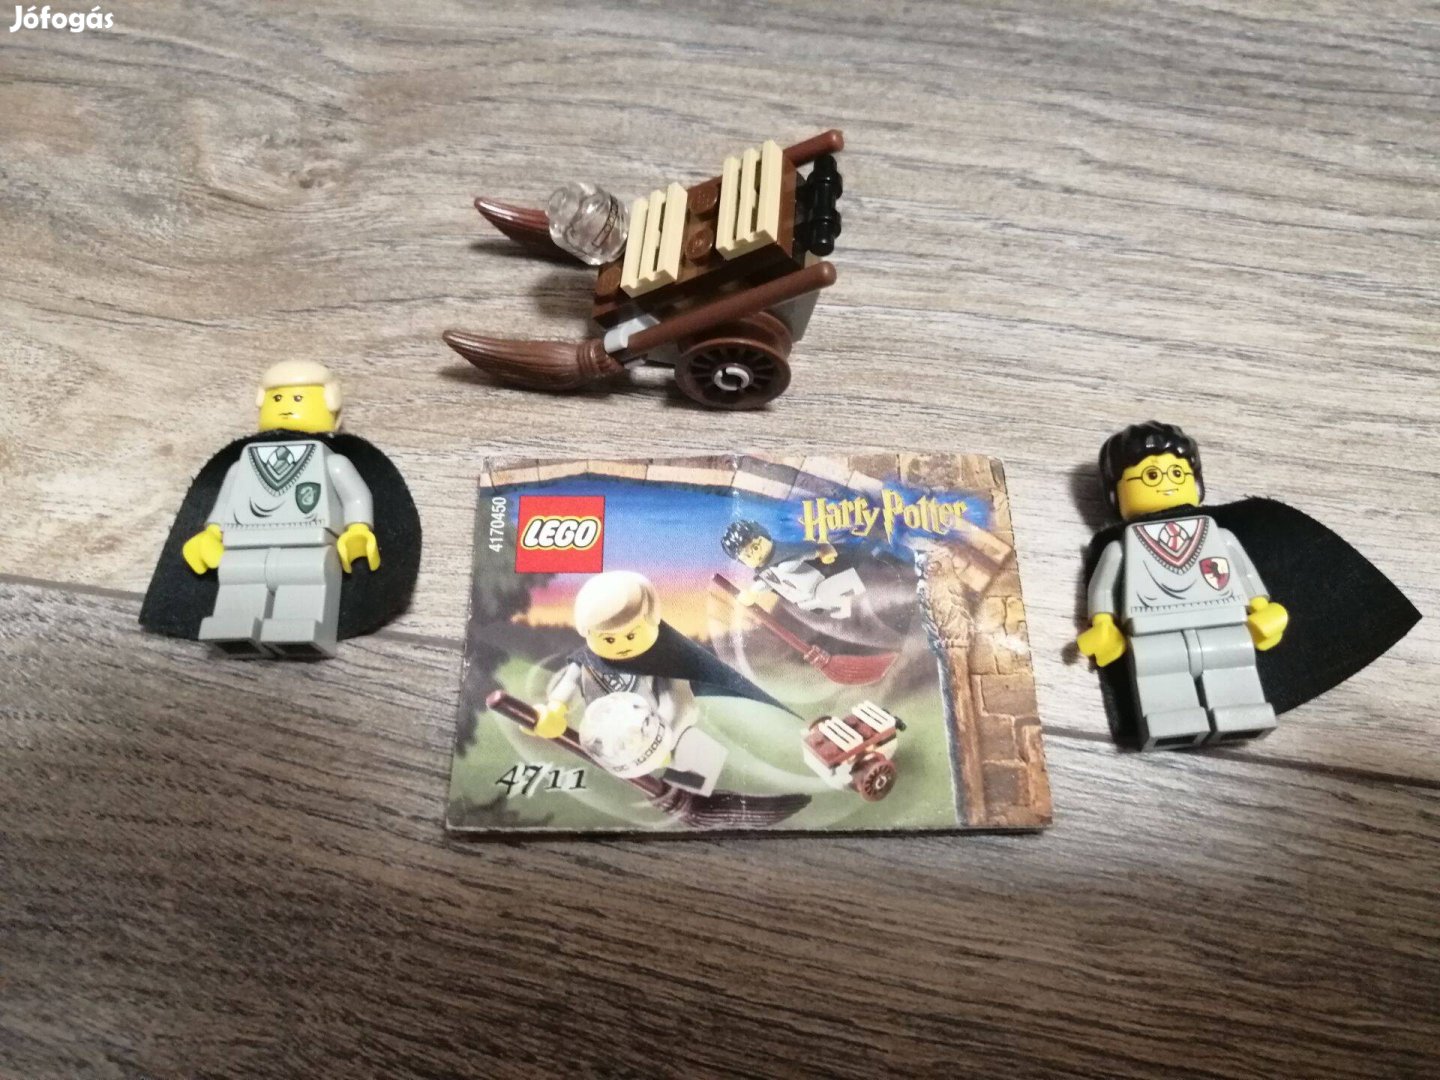 Lego Harry Potter 4711 használt készlet